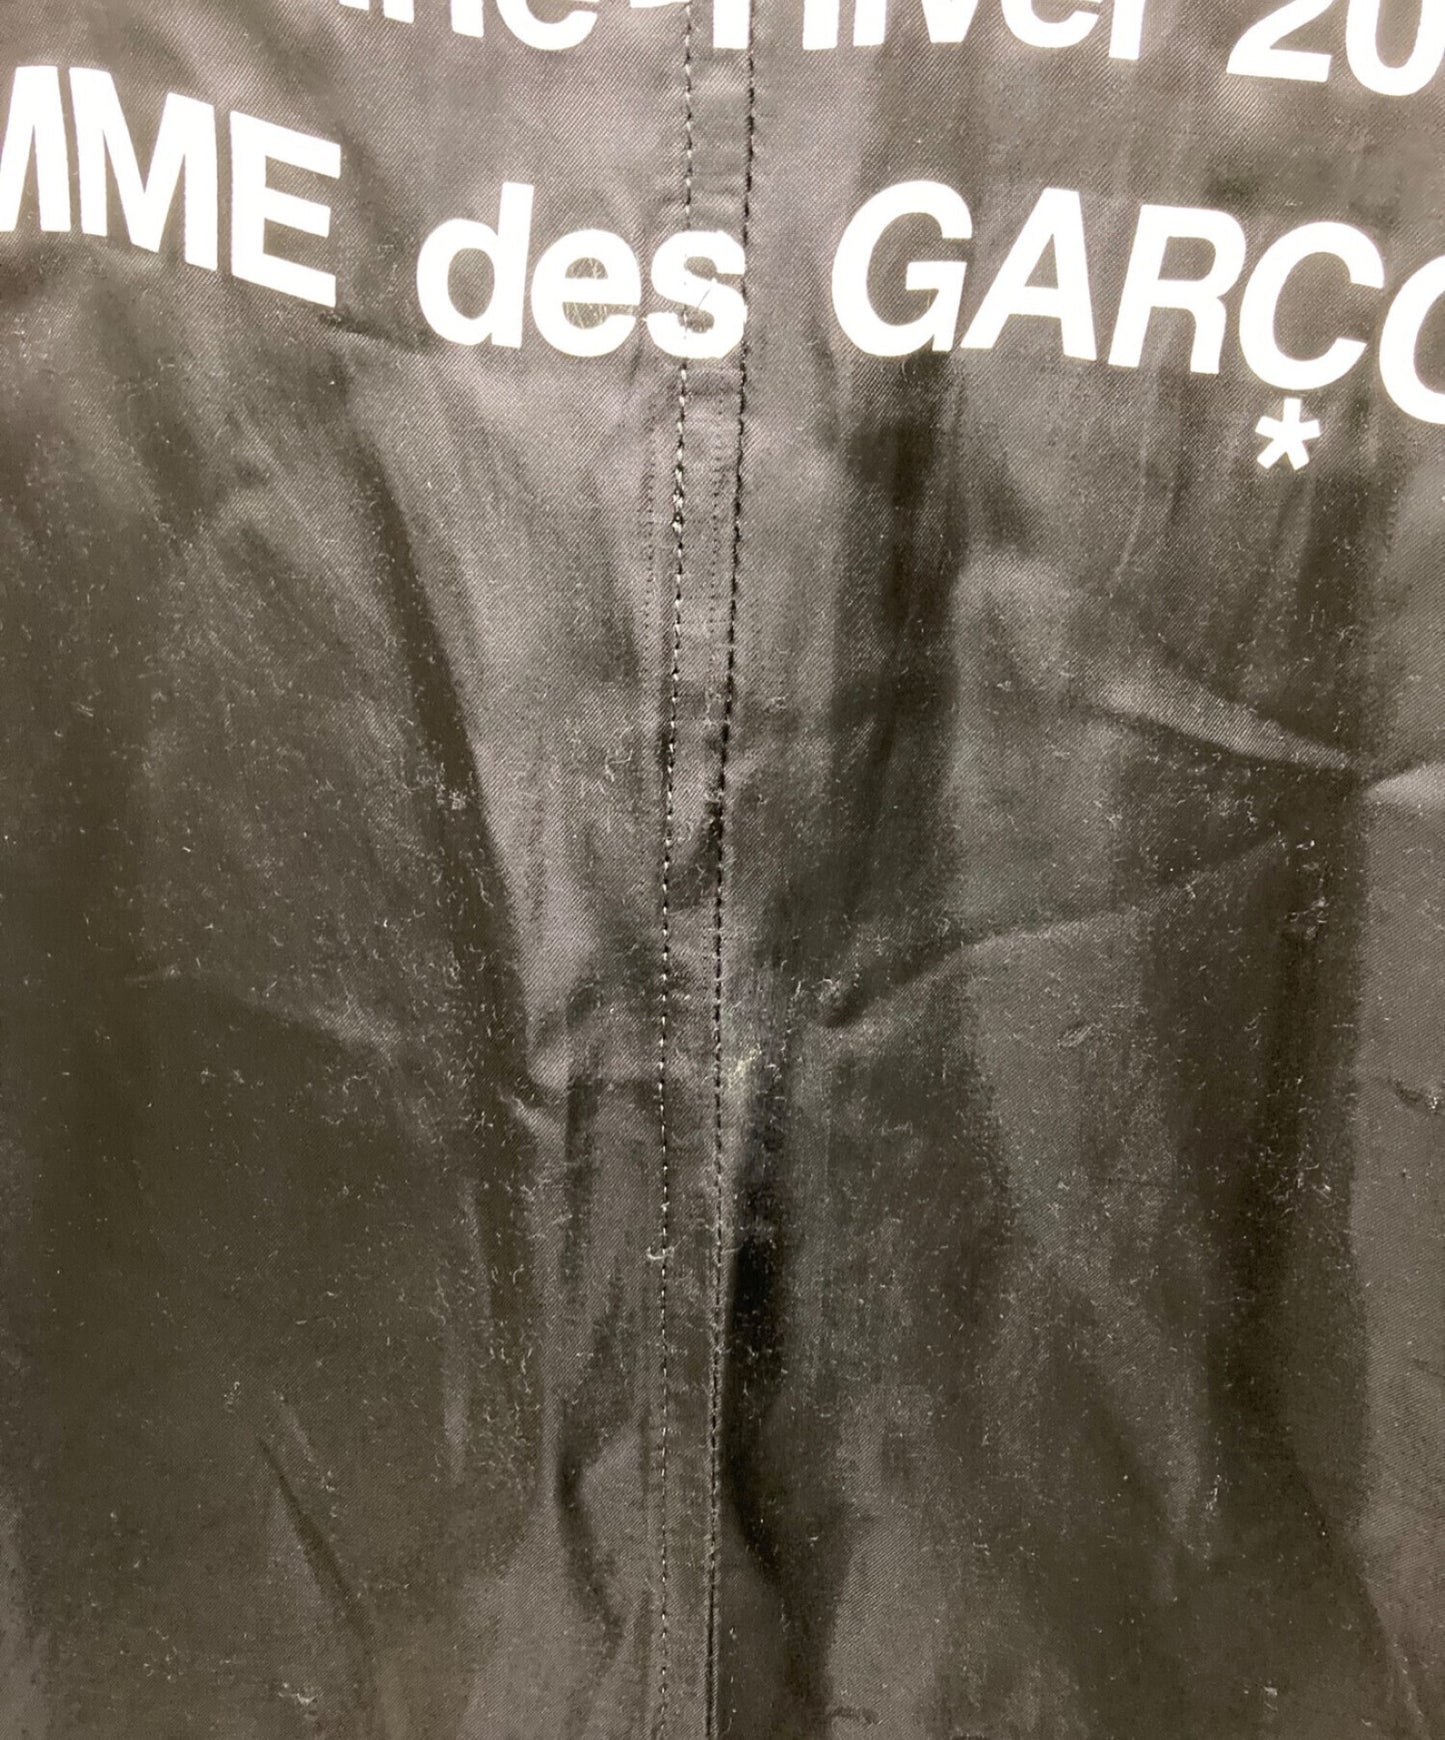 [Pre-owned] BLACK COMME des GARCONS staff coat 1P-C002